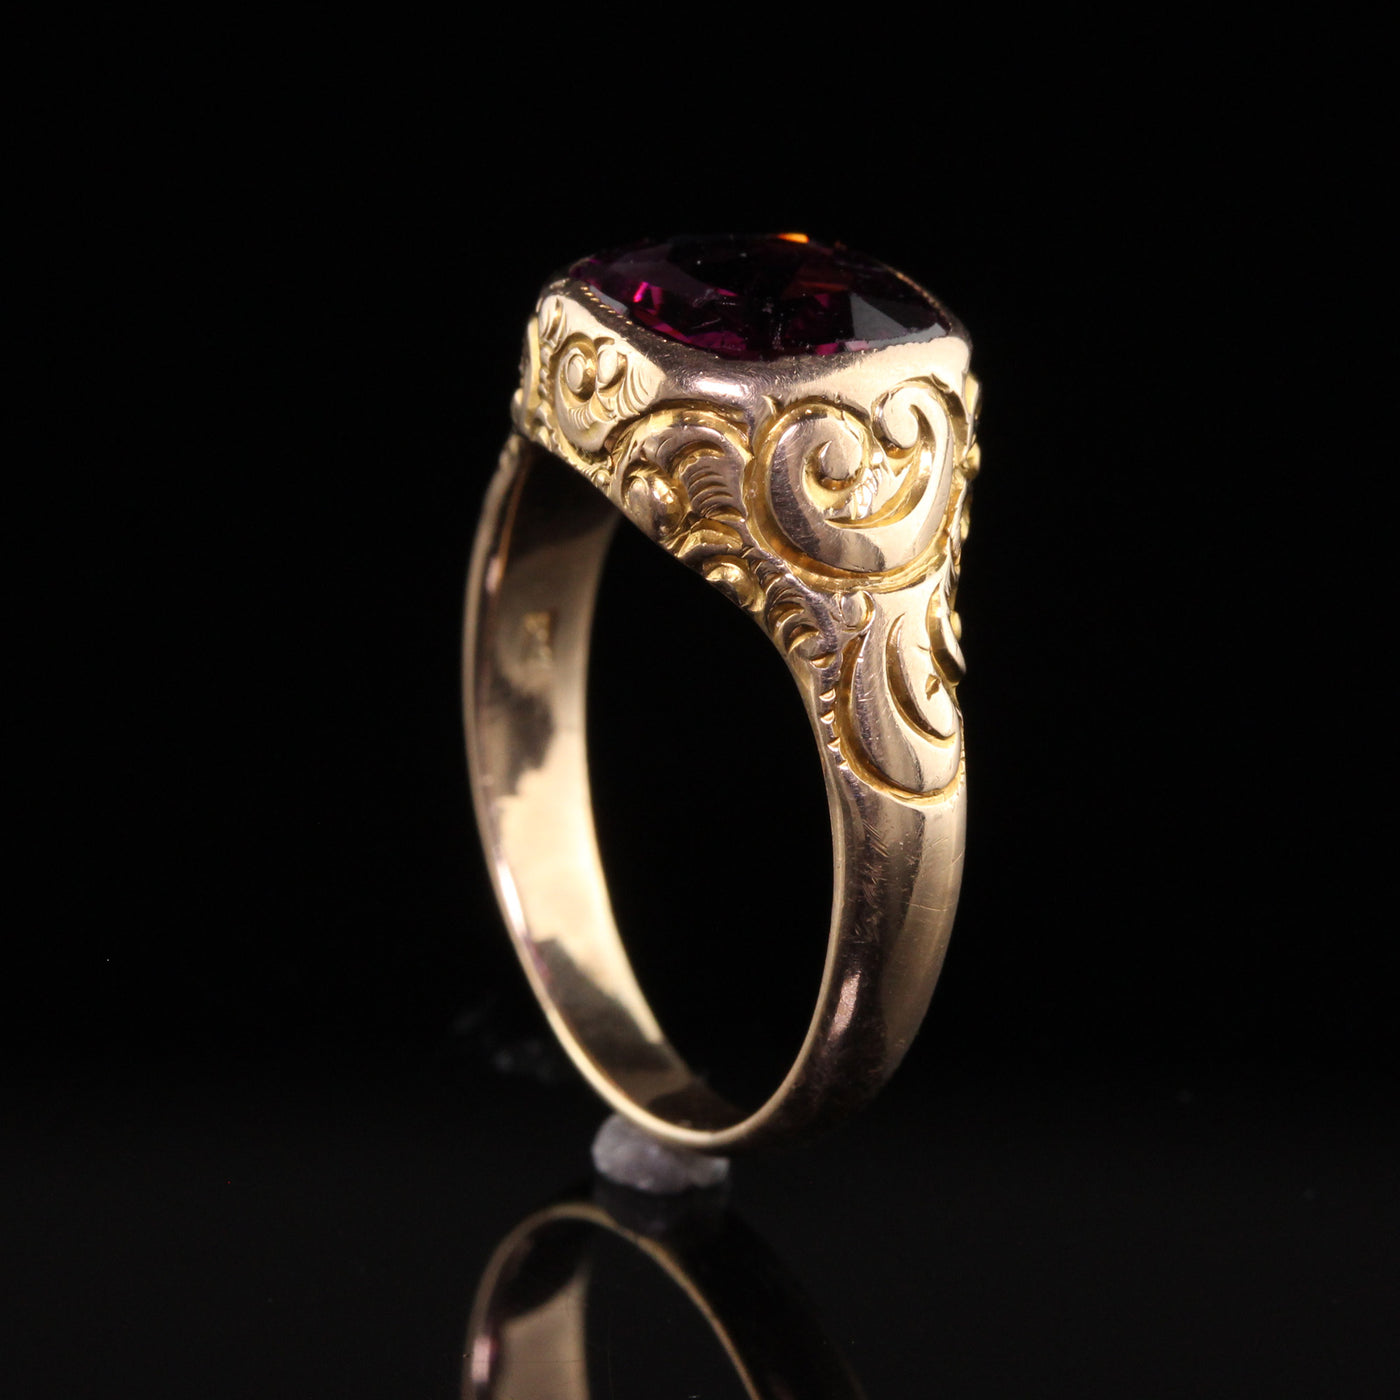 Antique Victorian 12K Yellow Gold Engraved Rhodolite Garnet Ring